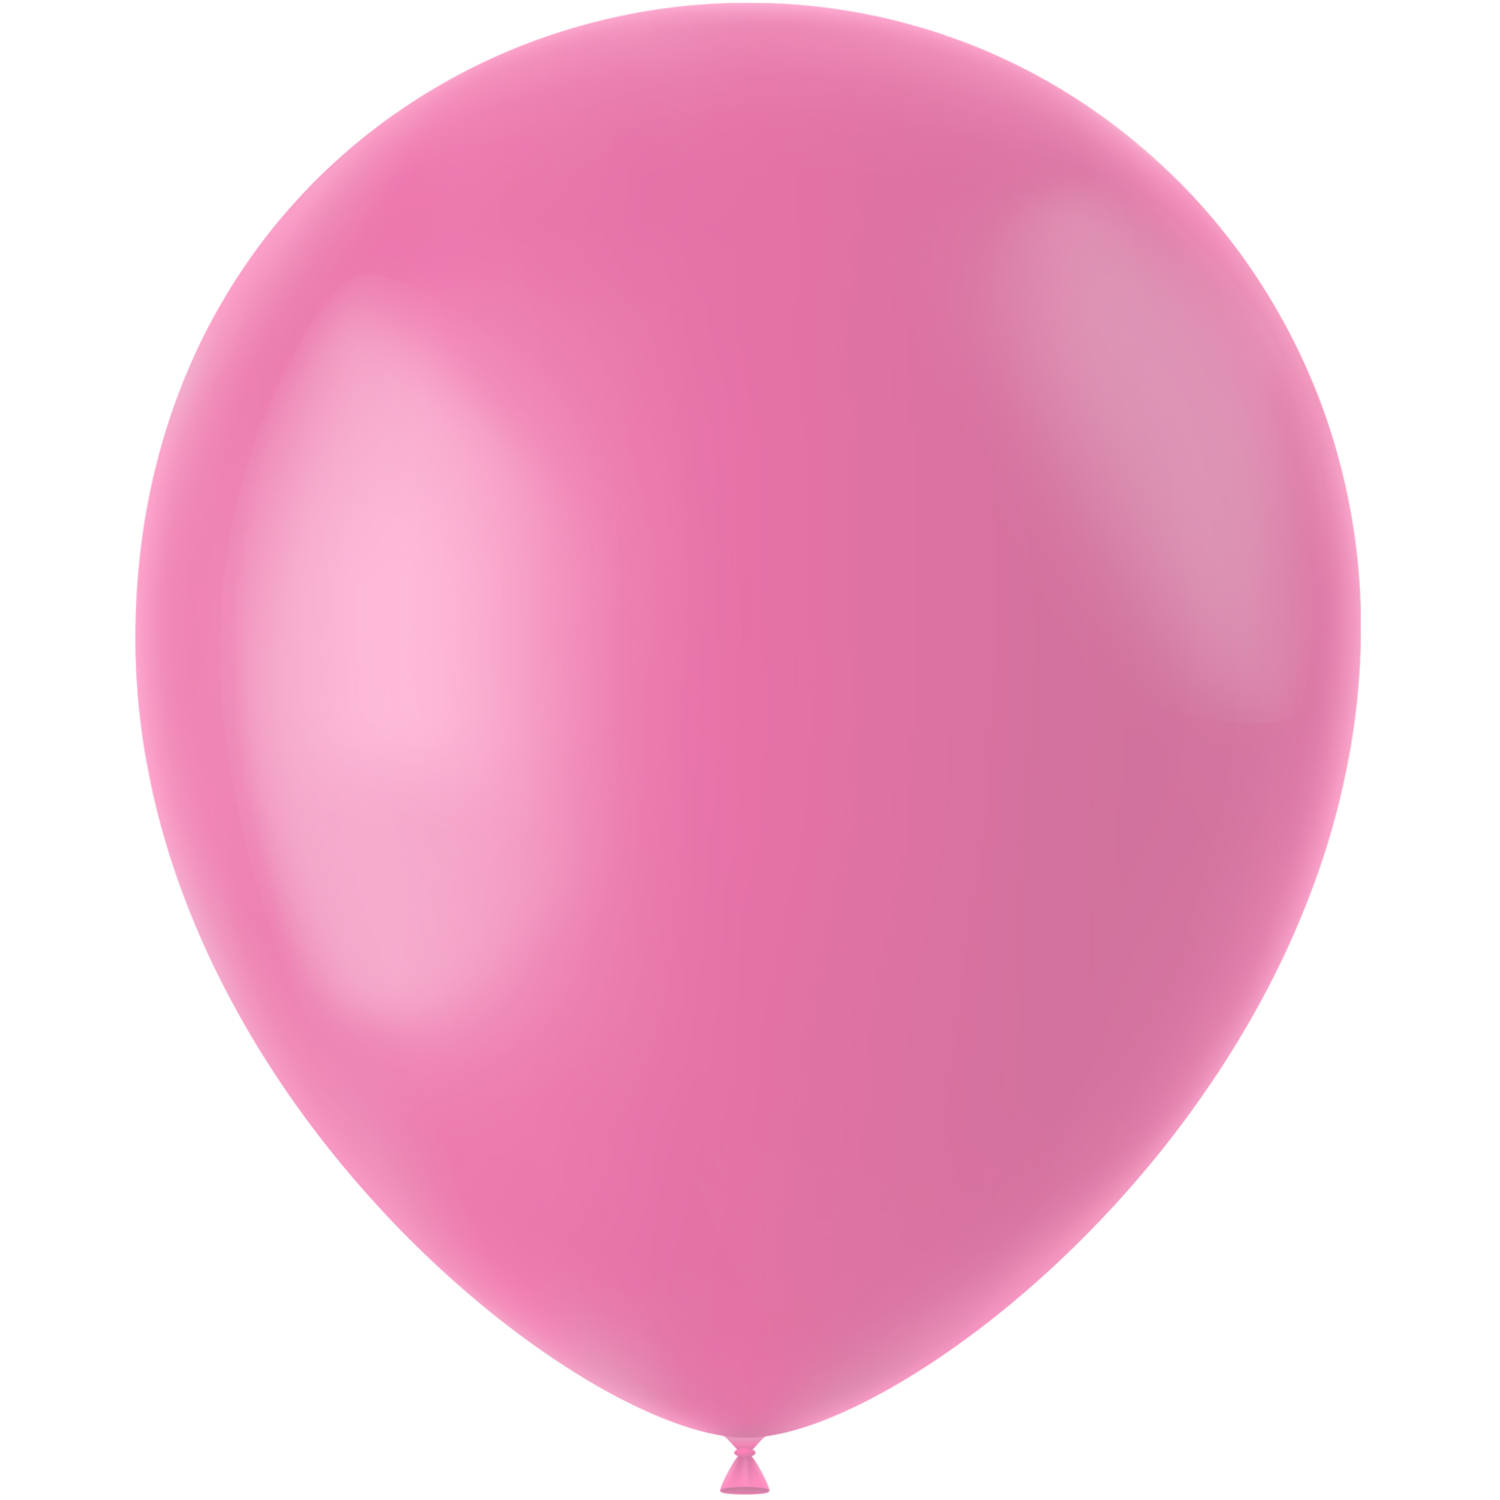 Balloner 50 stk. (Mat Rosey Pink, 33cm)